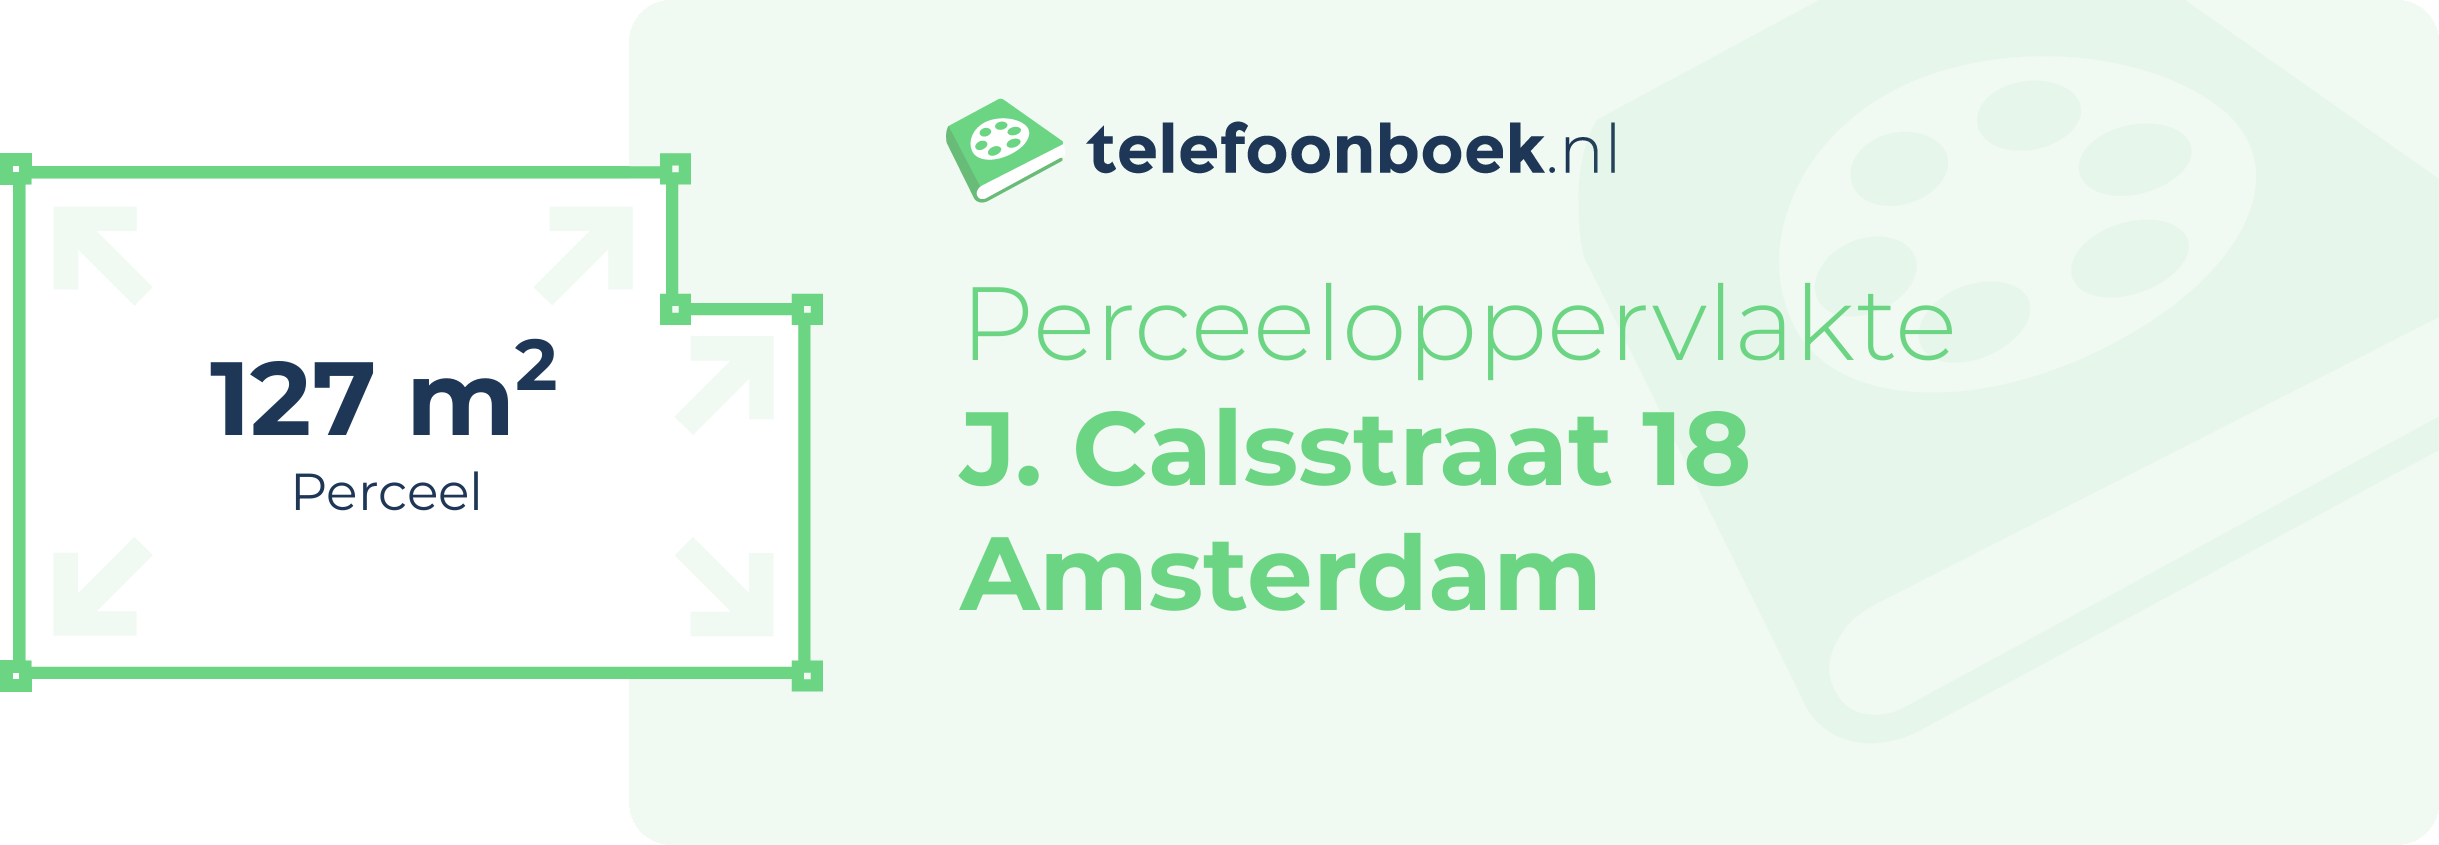 Perceeloppervlakte J. Calsstraat 18 Amsterdam